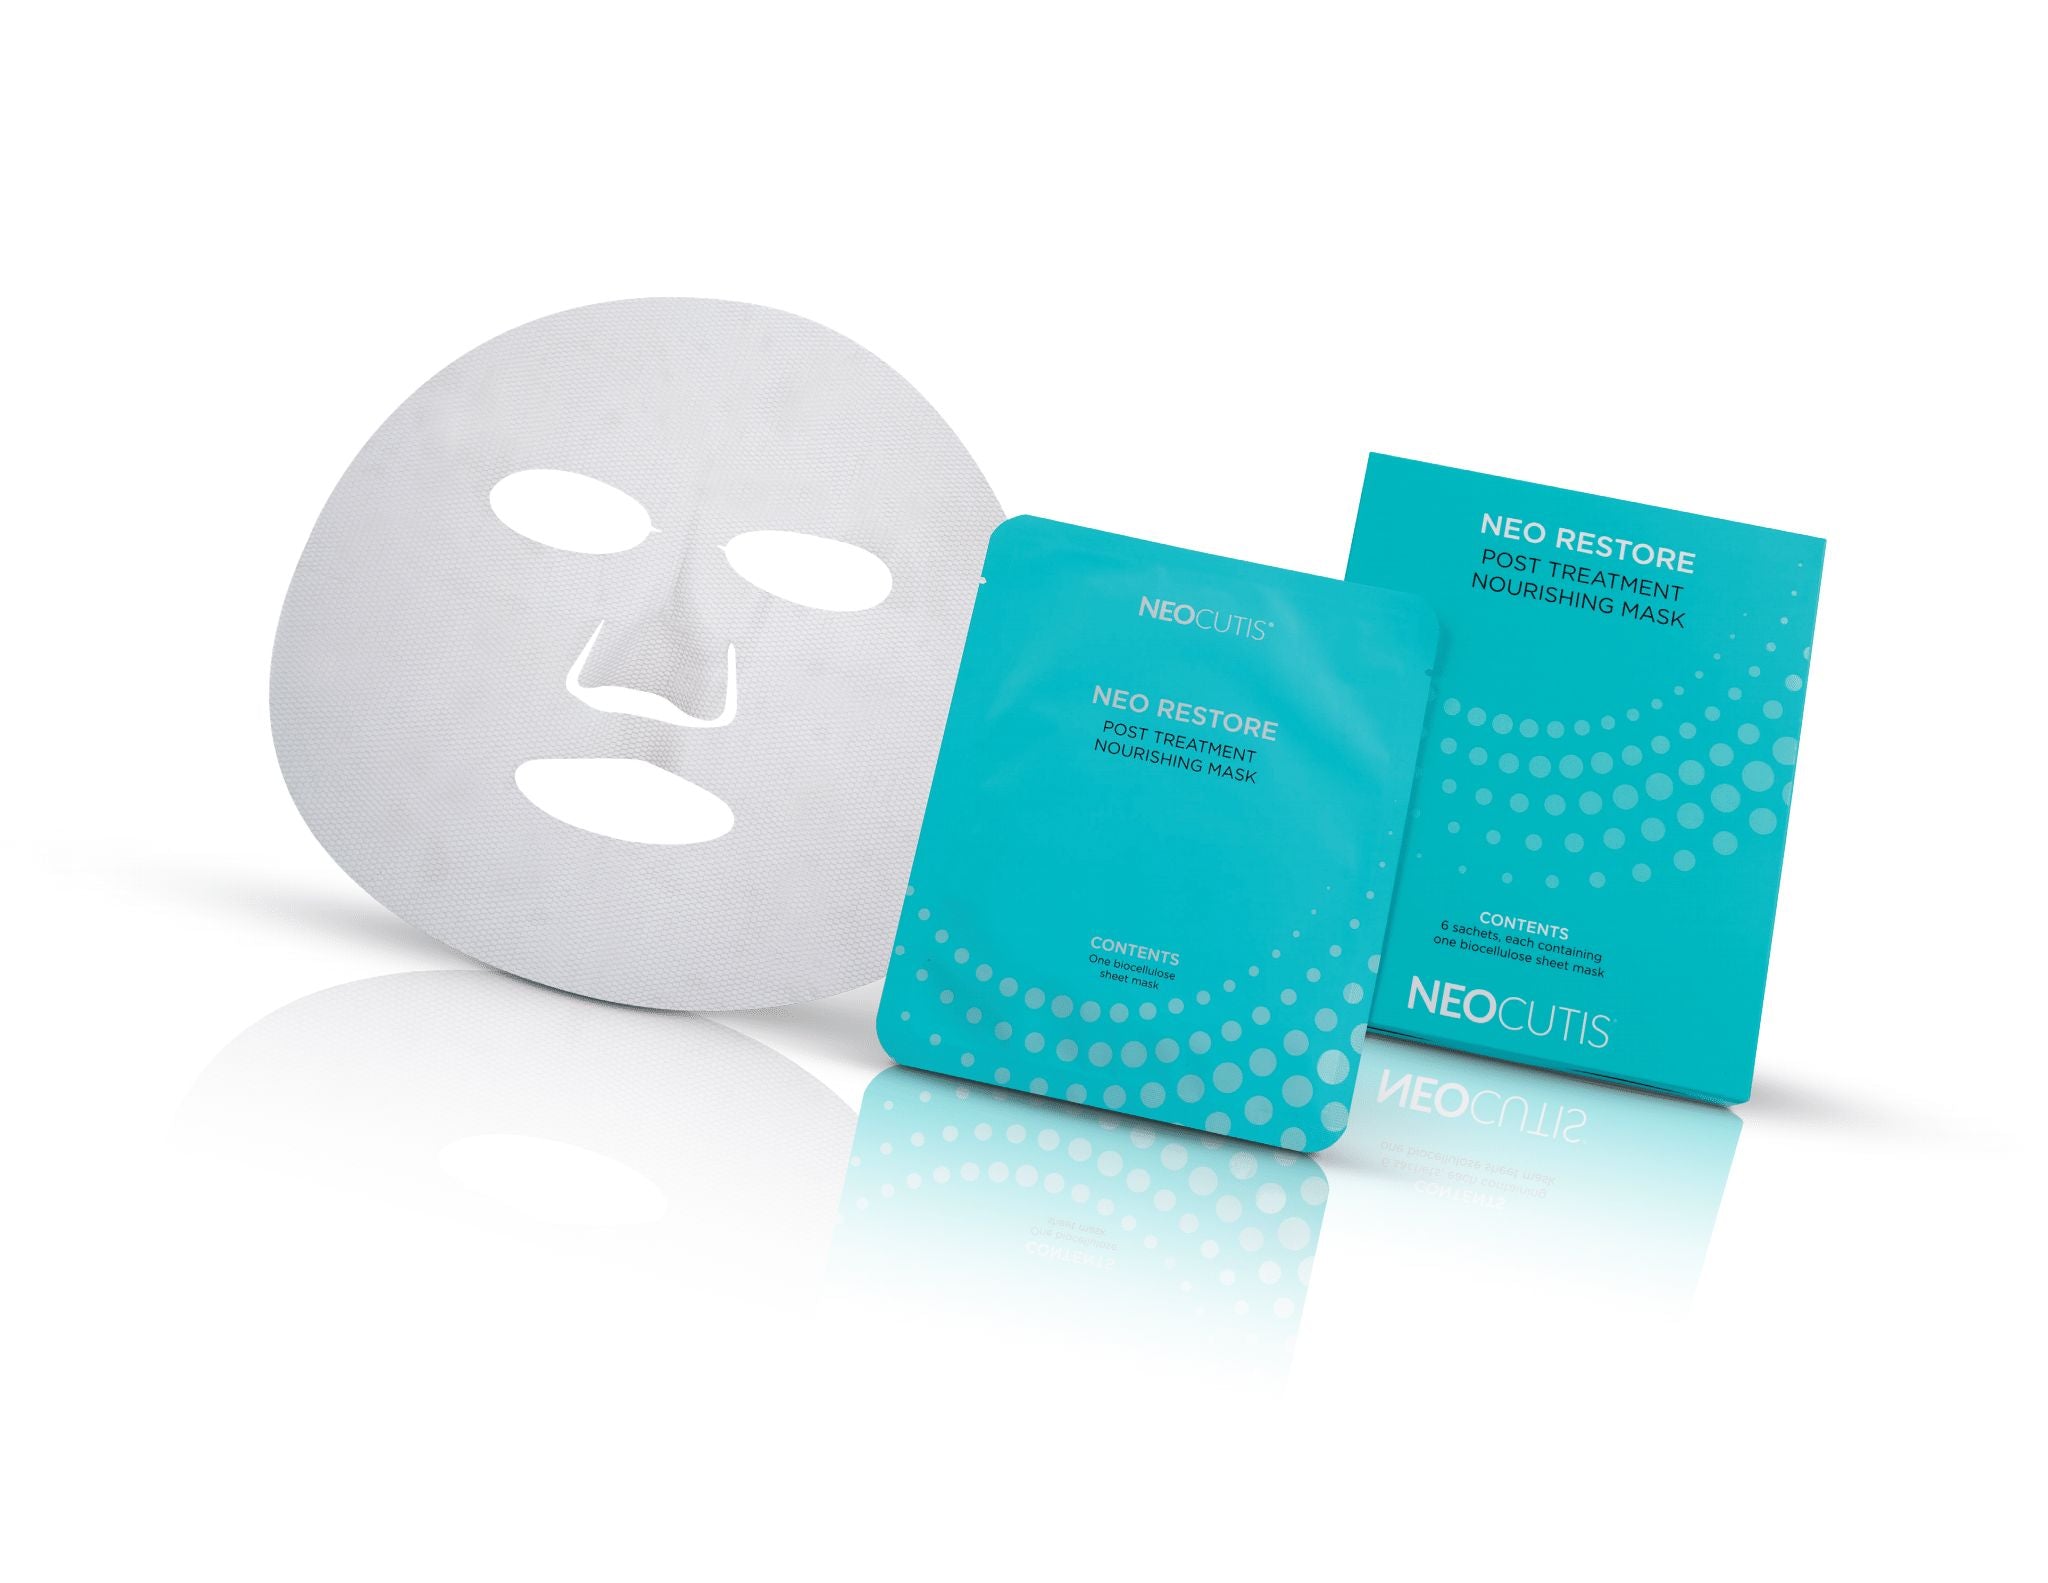 Neocutis Neo Restore Mask (6 Count)